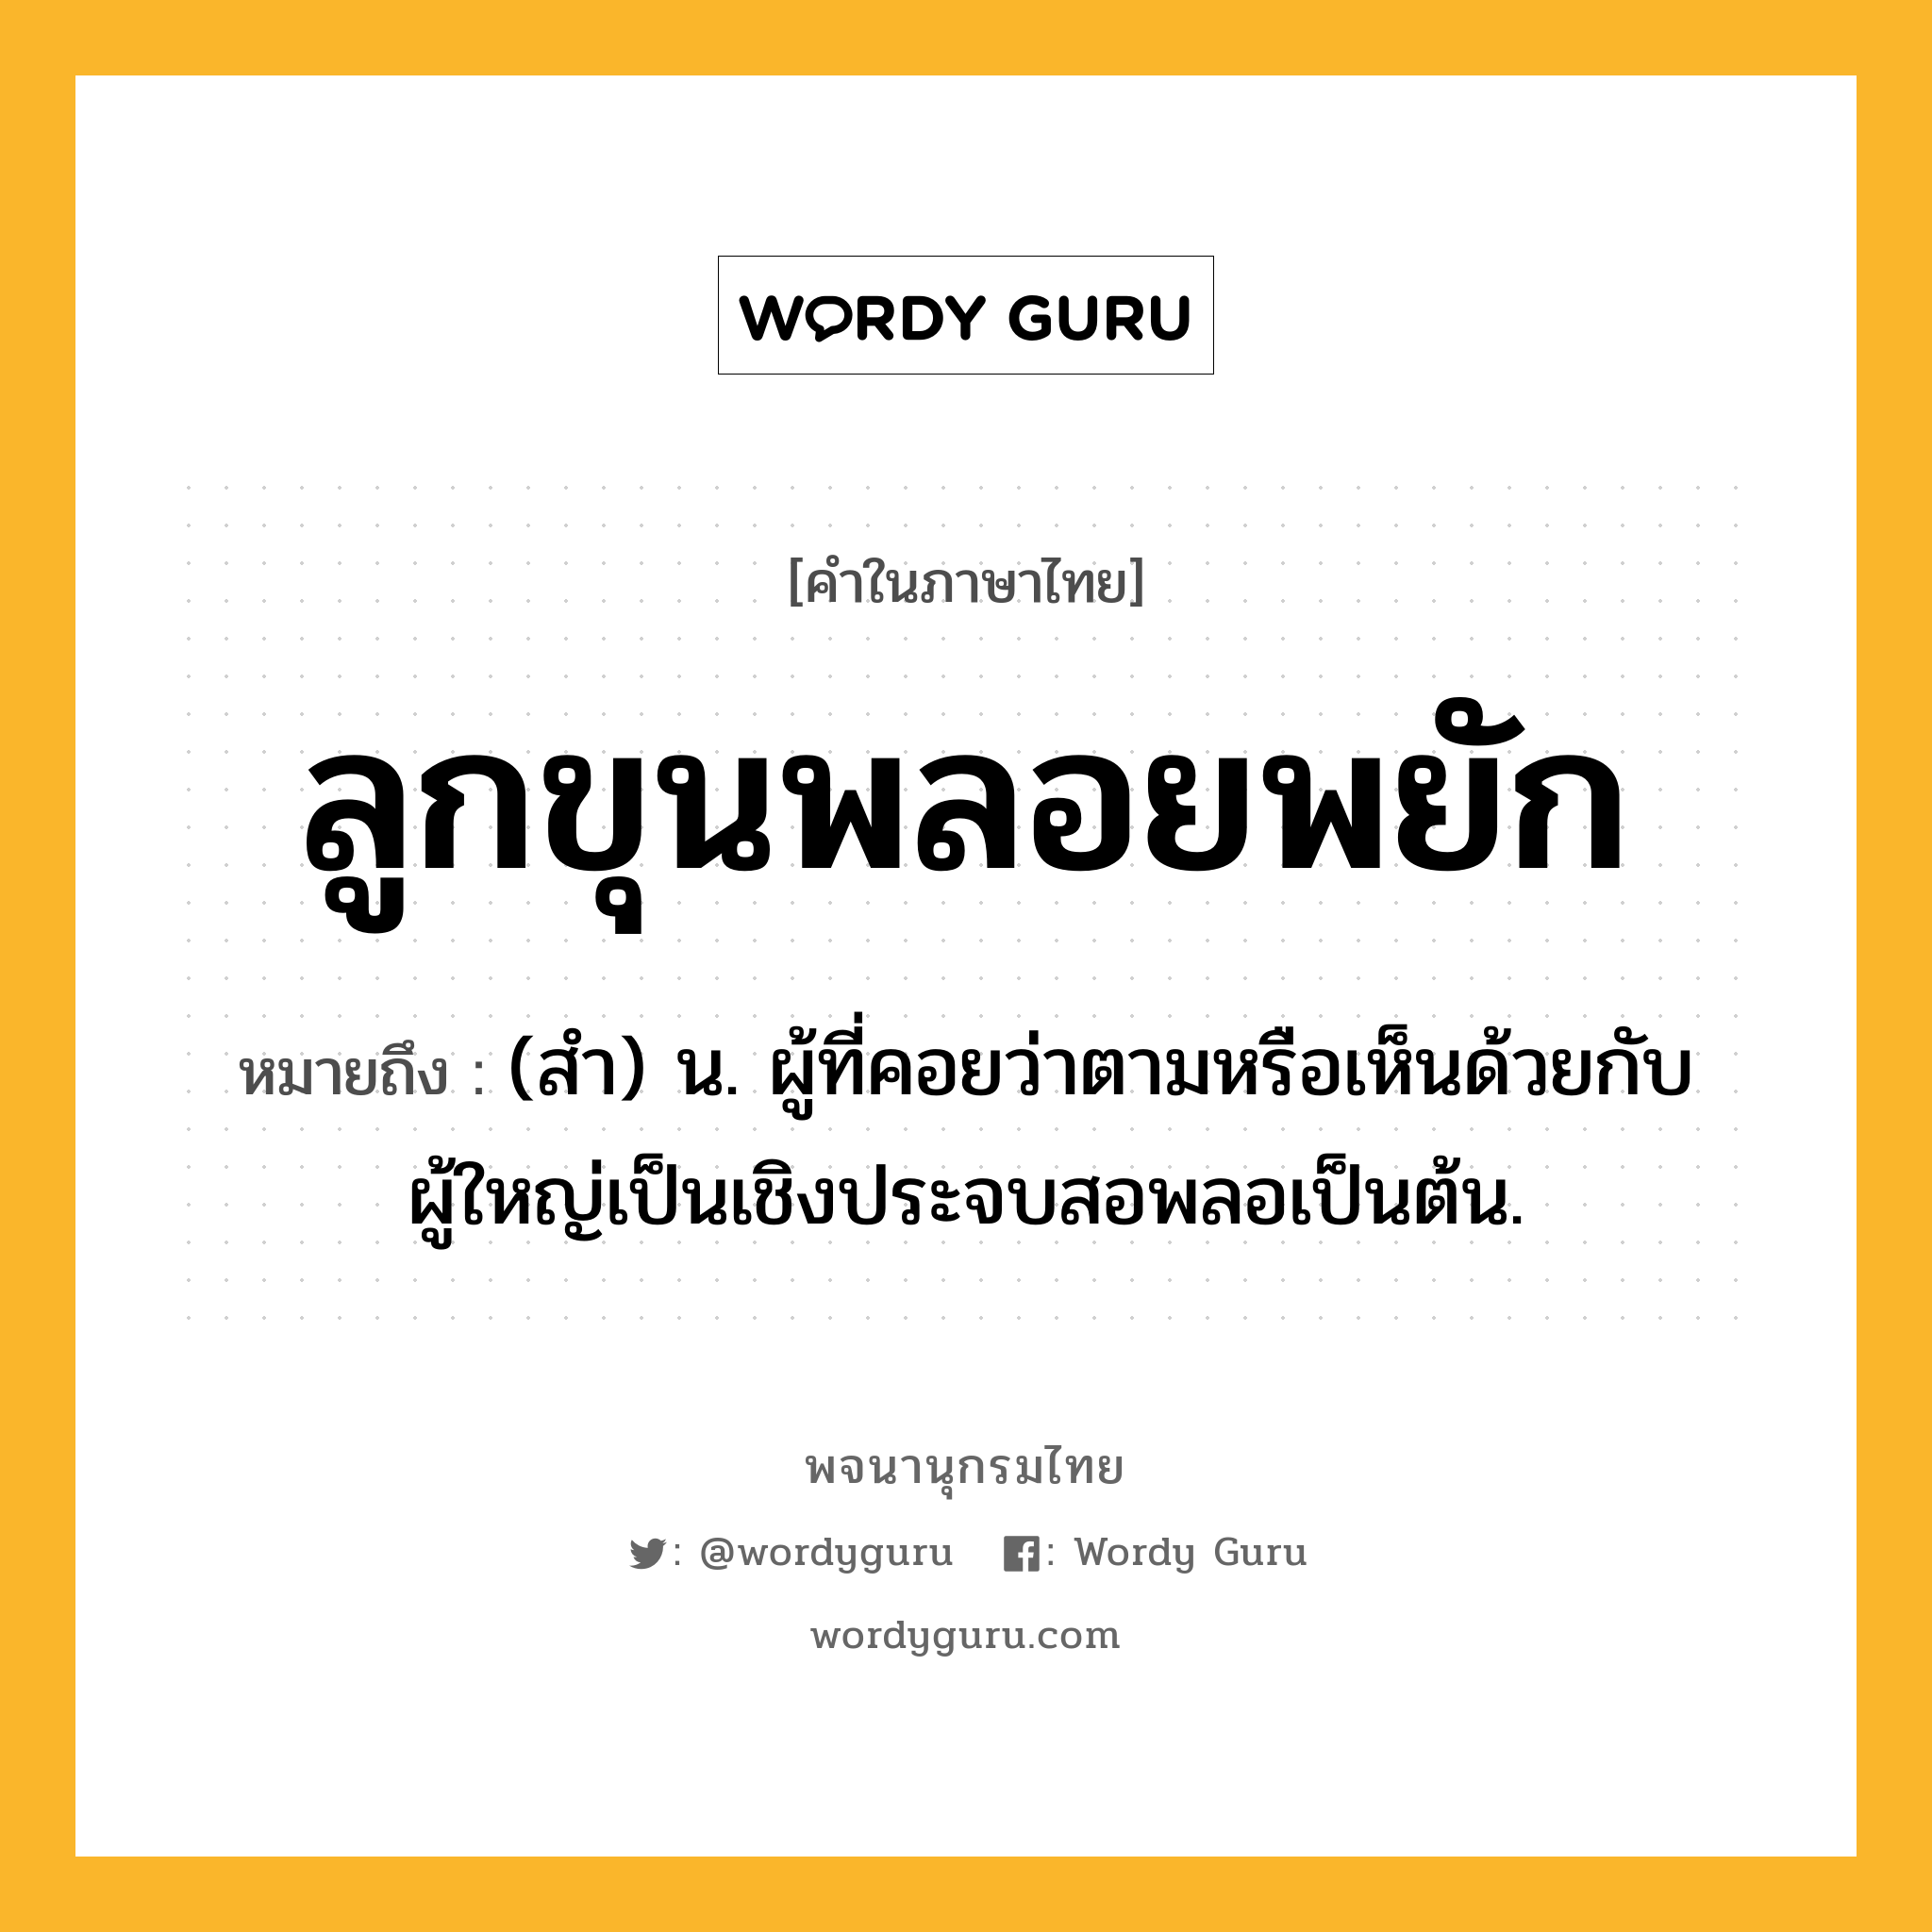 ลูกขุนพลอยพยัก หมายถึงอะไร?, คำในภาษาไทย ลูกขุนพลอยพยัก หมายถึง (สํา) น. ผู้ที่คอยว่าตามหรือเห็นด้วยกับผู้ใหญ่เป็นเชิงประจบสอพลอเป็นต้น.